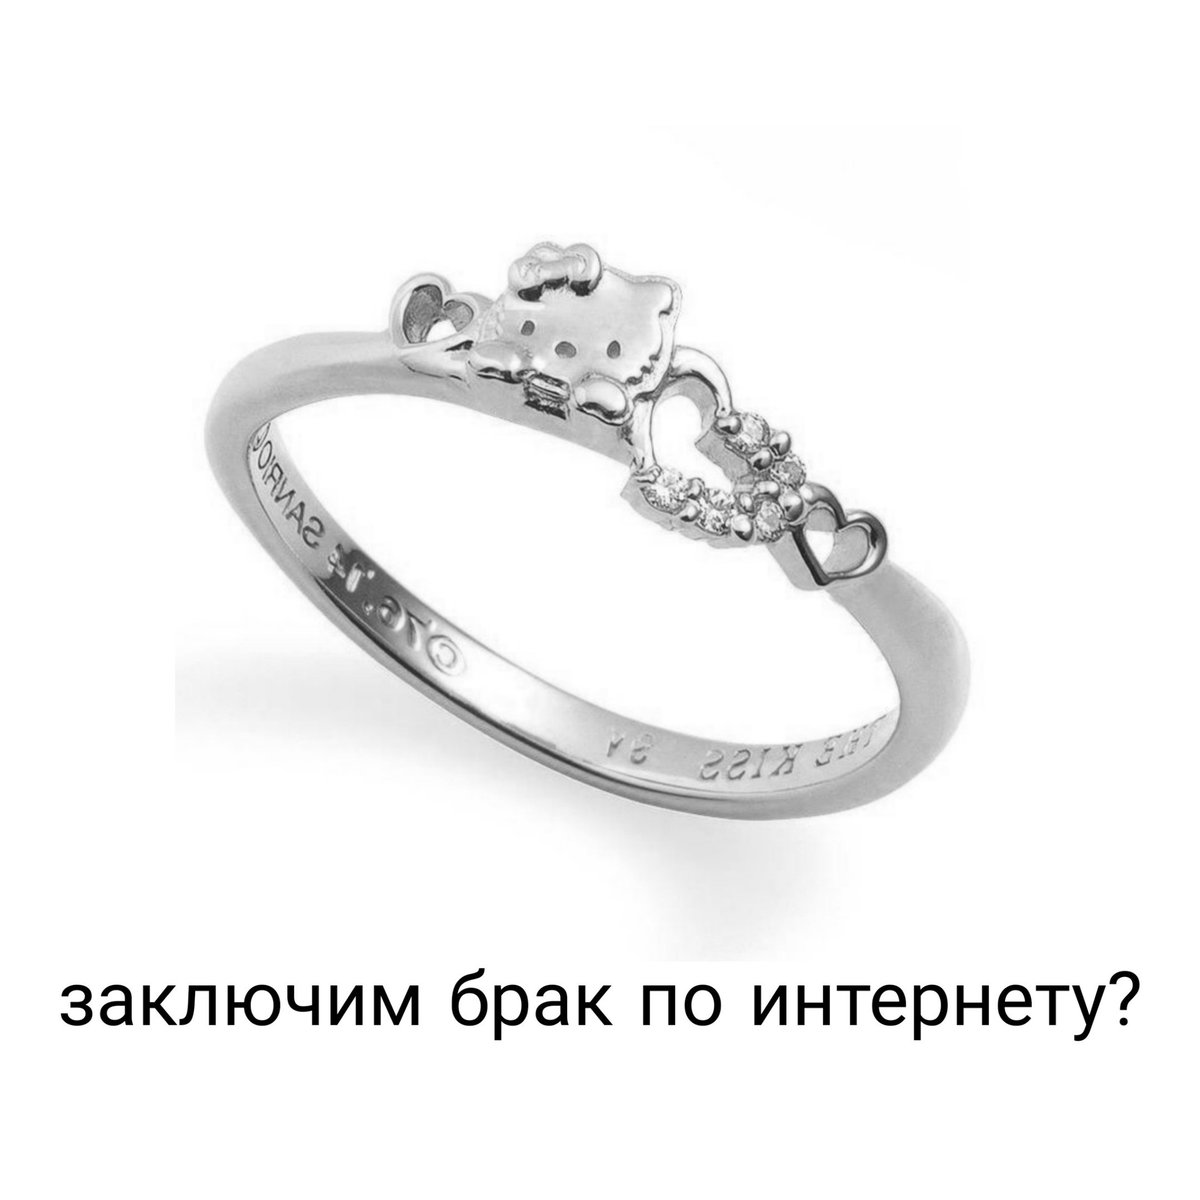 Любить навеки откуда у тебя это кольцо. Кольцо для предложения. Кольцо ты и я. Интернет брак заключить. Кольцо выходи за меня.